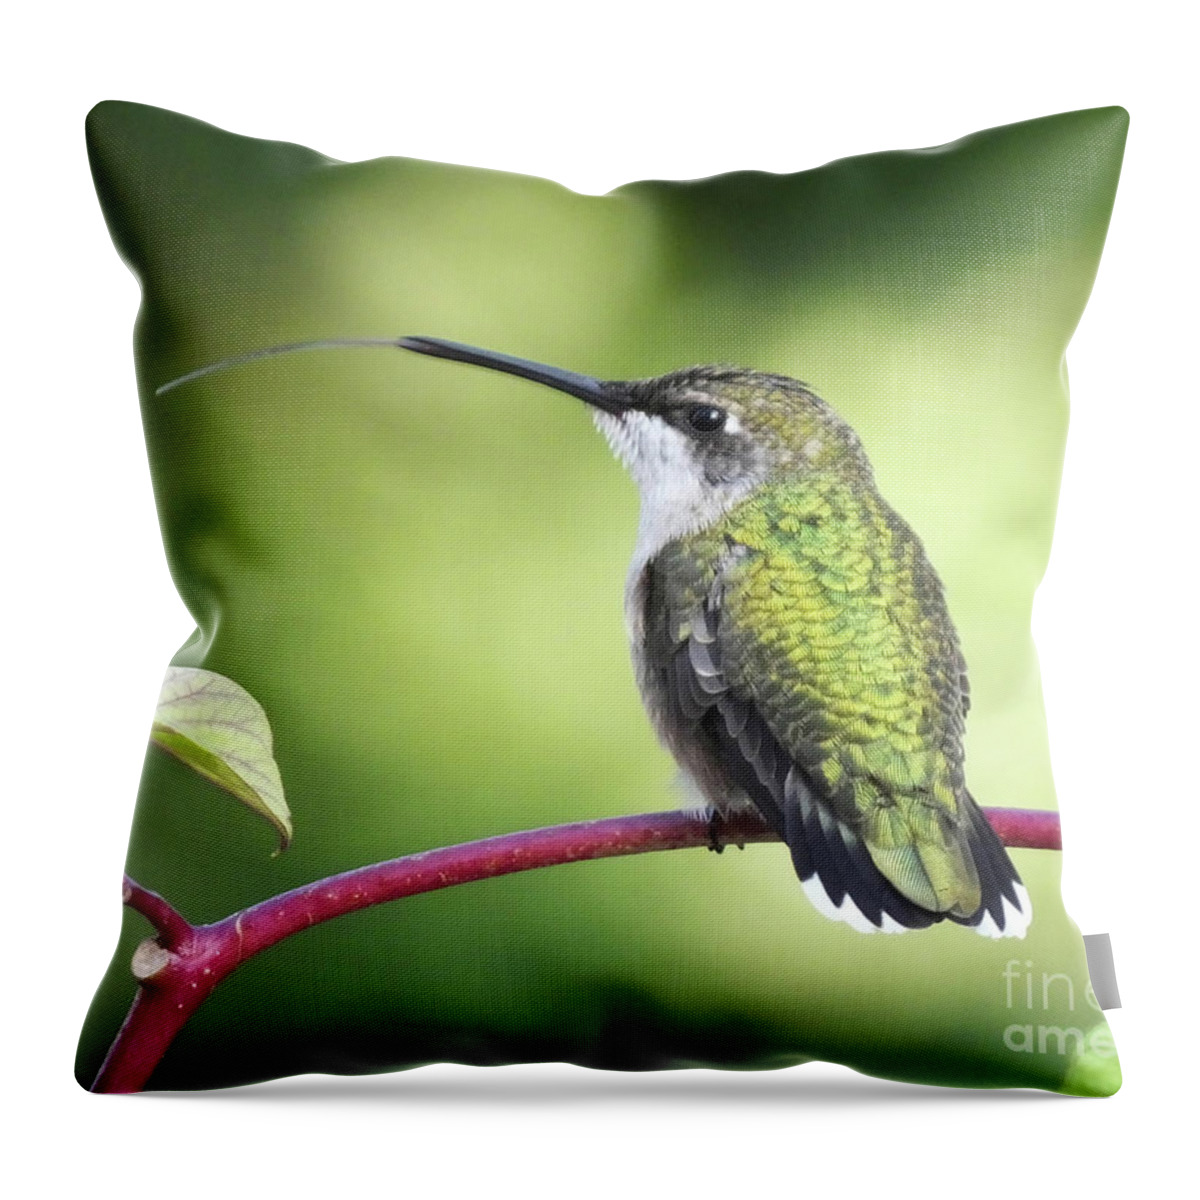 Ruby Throated Hummingbird Throw Pillow featuring the photograph Pppppfffffttttt by Lizi Beard-Ward